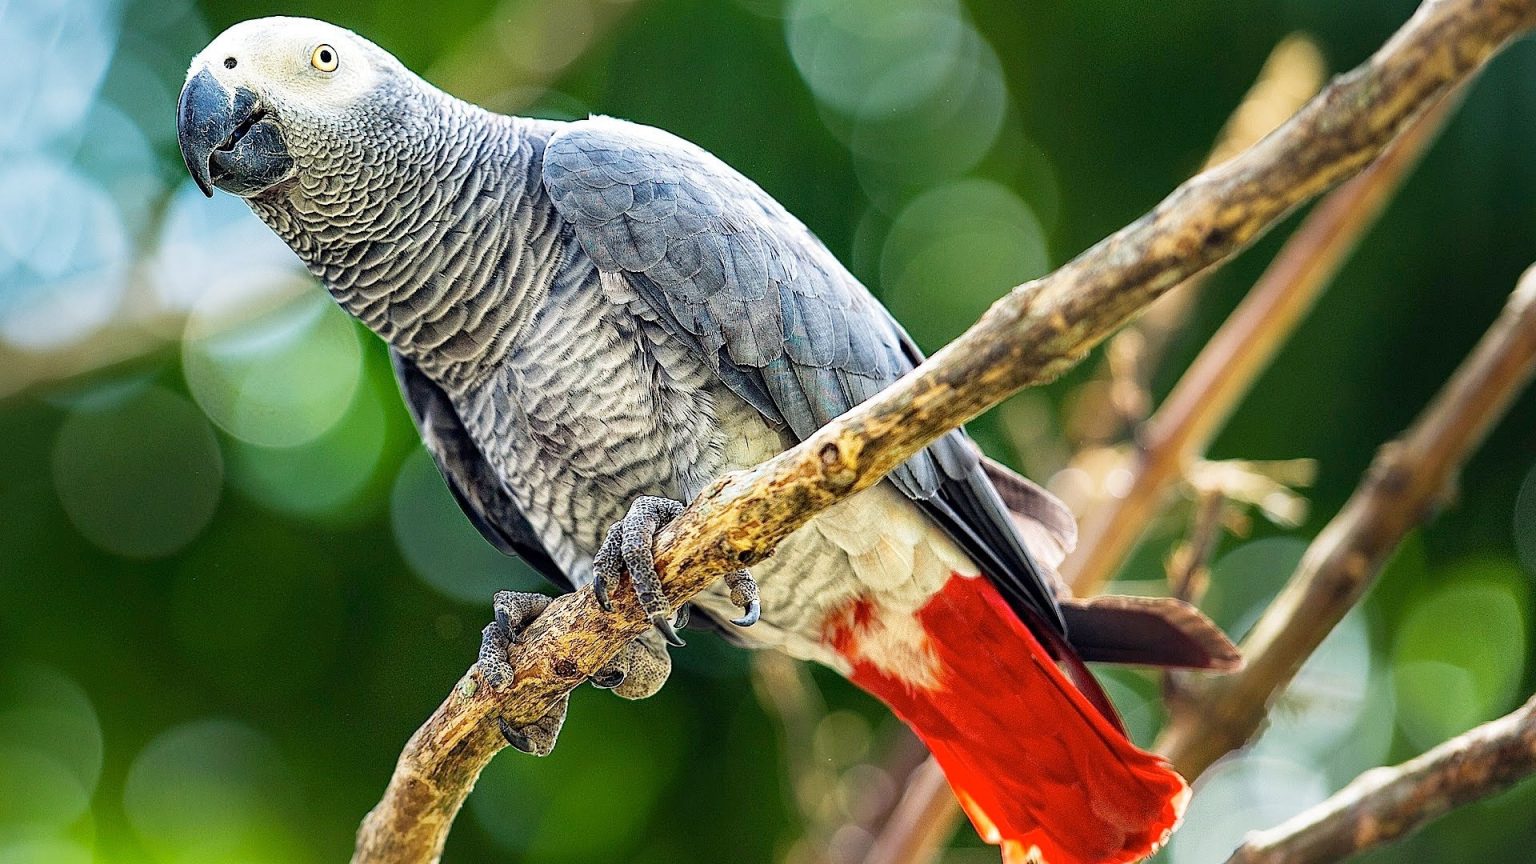 Tổng hợp hình ảnh chim Vẹt đẹp nhất - [Kích thước hình ảnh: 1536x864 px]